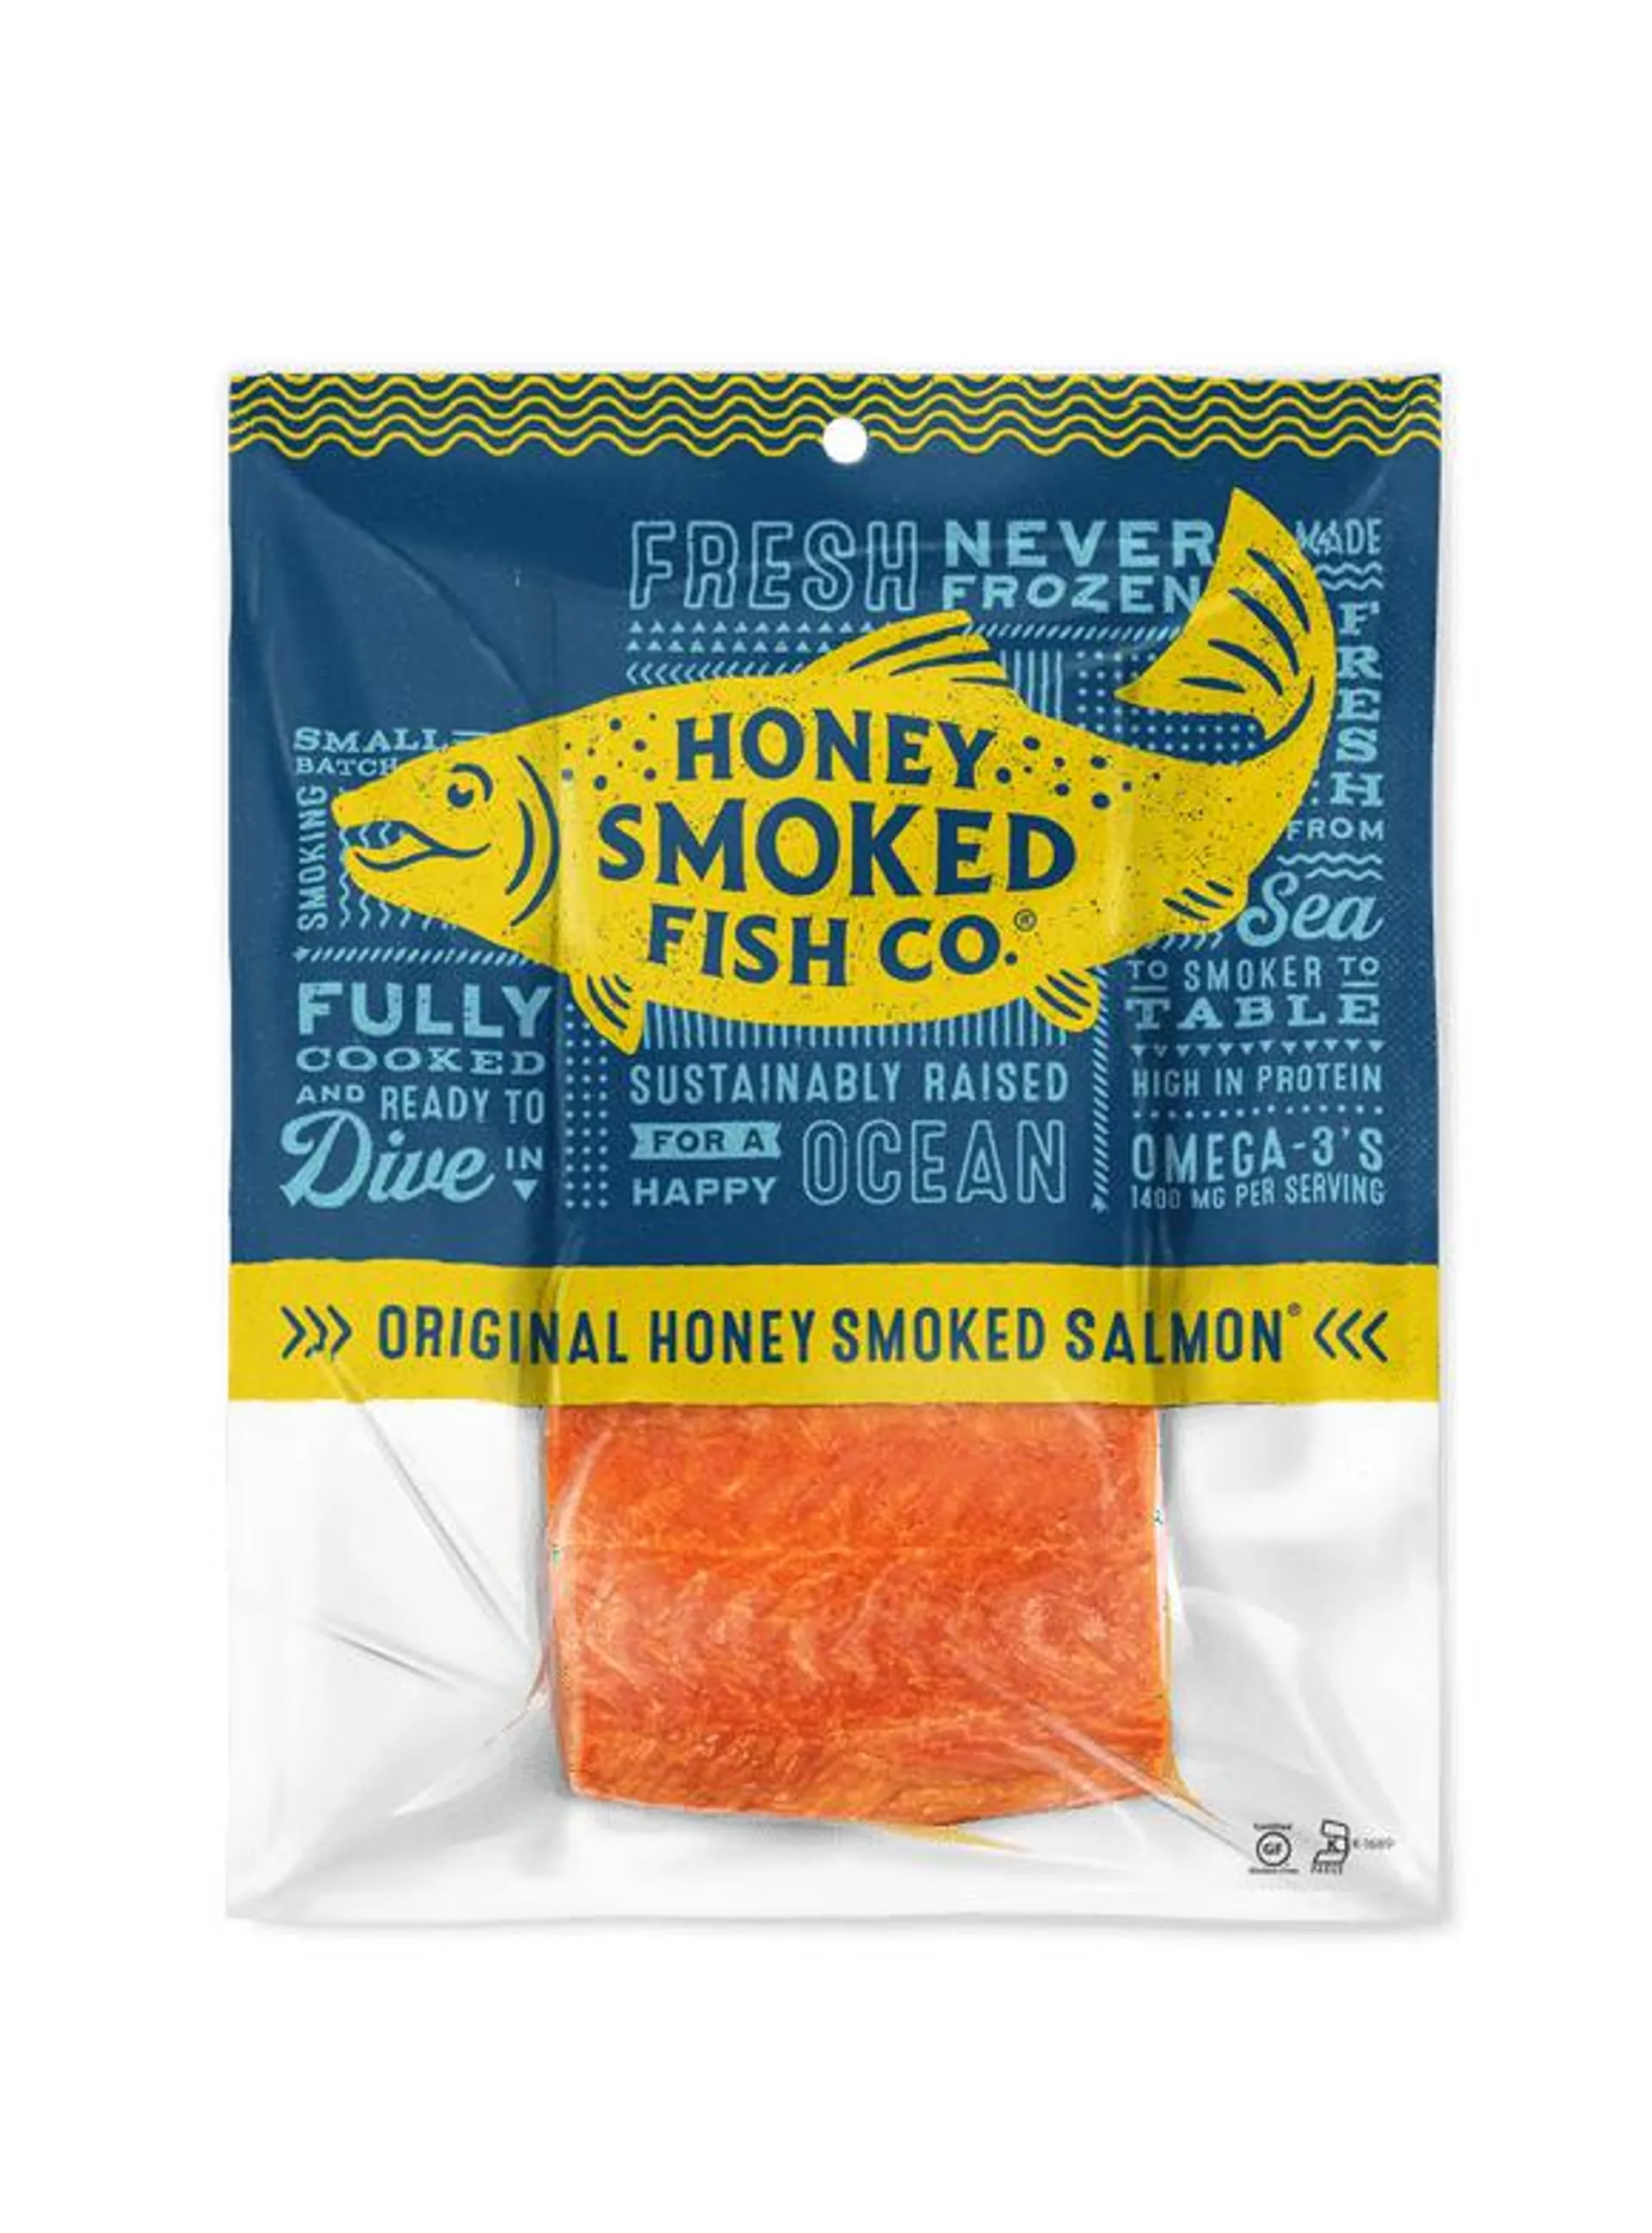 Honey Smoked Fish Co. Original Honey Smoked Salmon, 0.65 - 0.85 lb, Keep Refrigerated